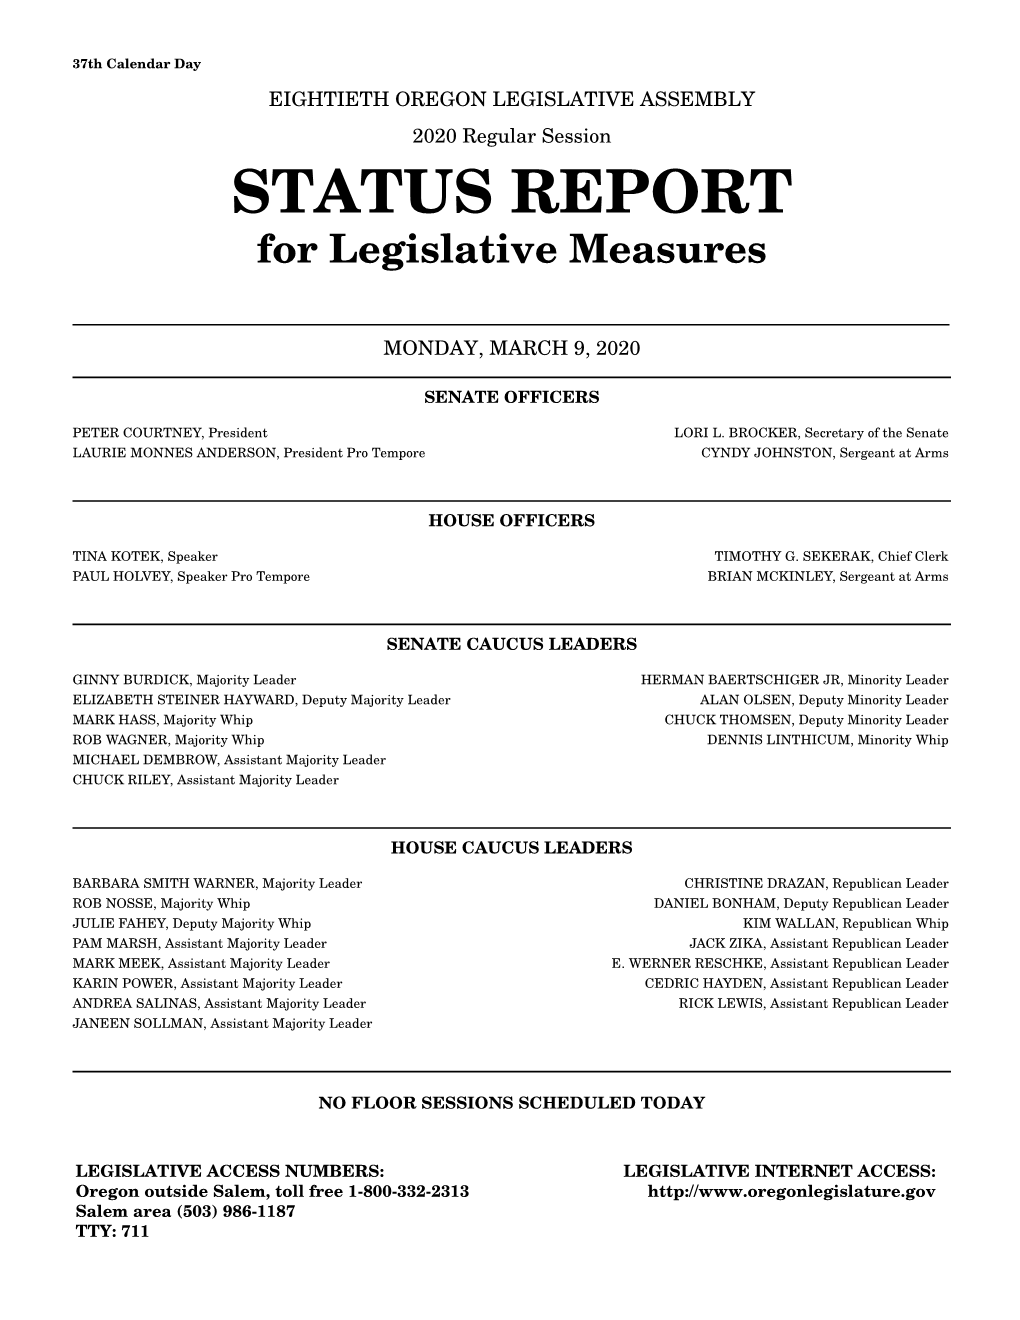 STATUS REPORT for Legislative Measures